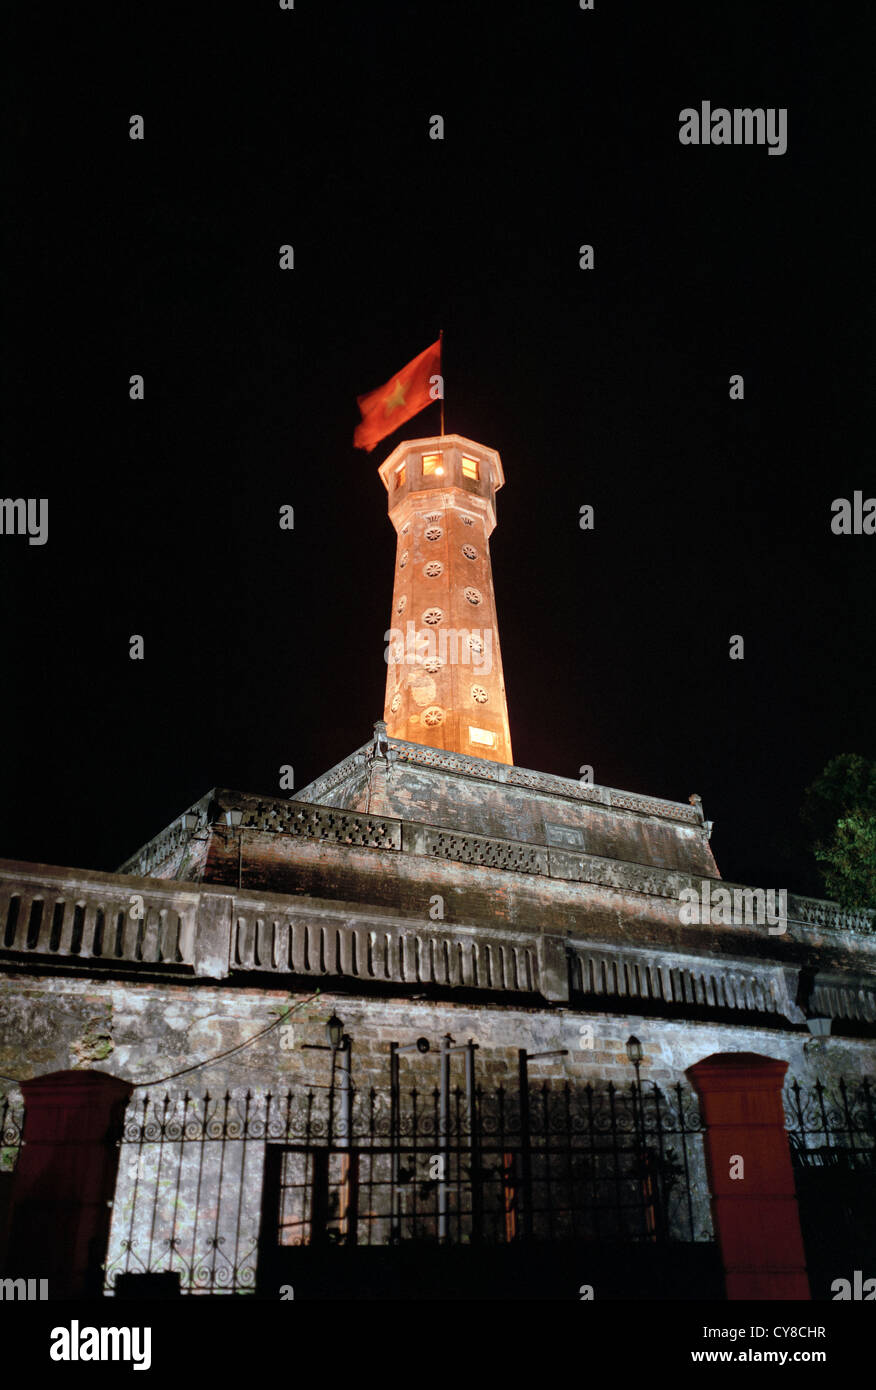 Vietnam Militärhistorisches Museum in Hanoi in Vietnam in Fernost Südostasien. Nacht Tower Architektur Historische Wanderlust Travel Stockfoto